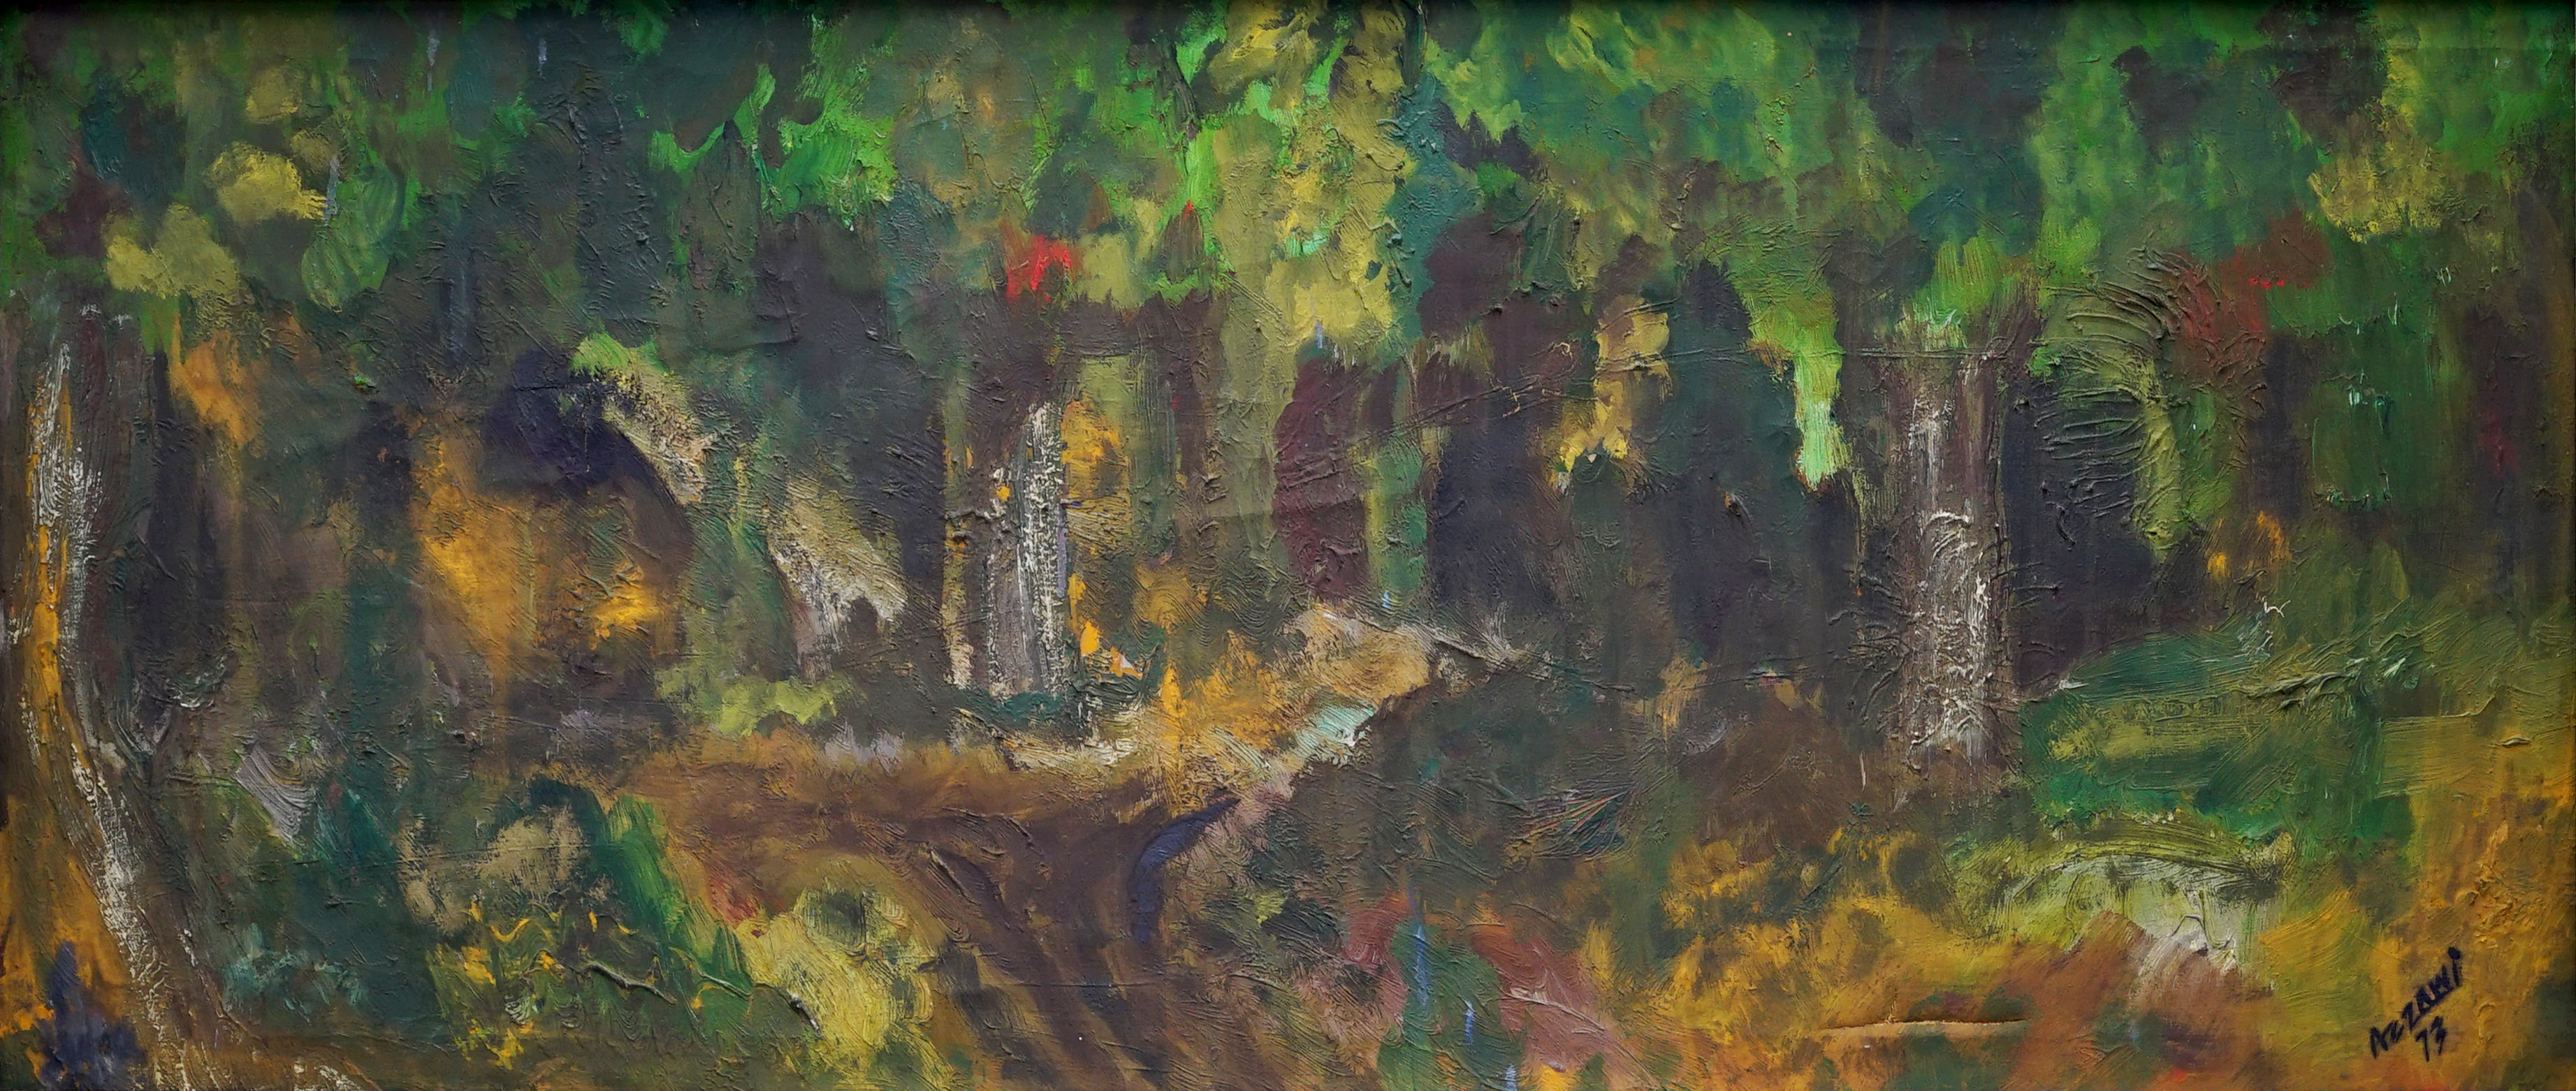 landscape 42x100 cm, oil on canvas